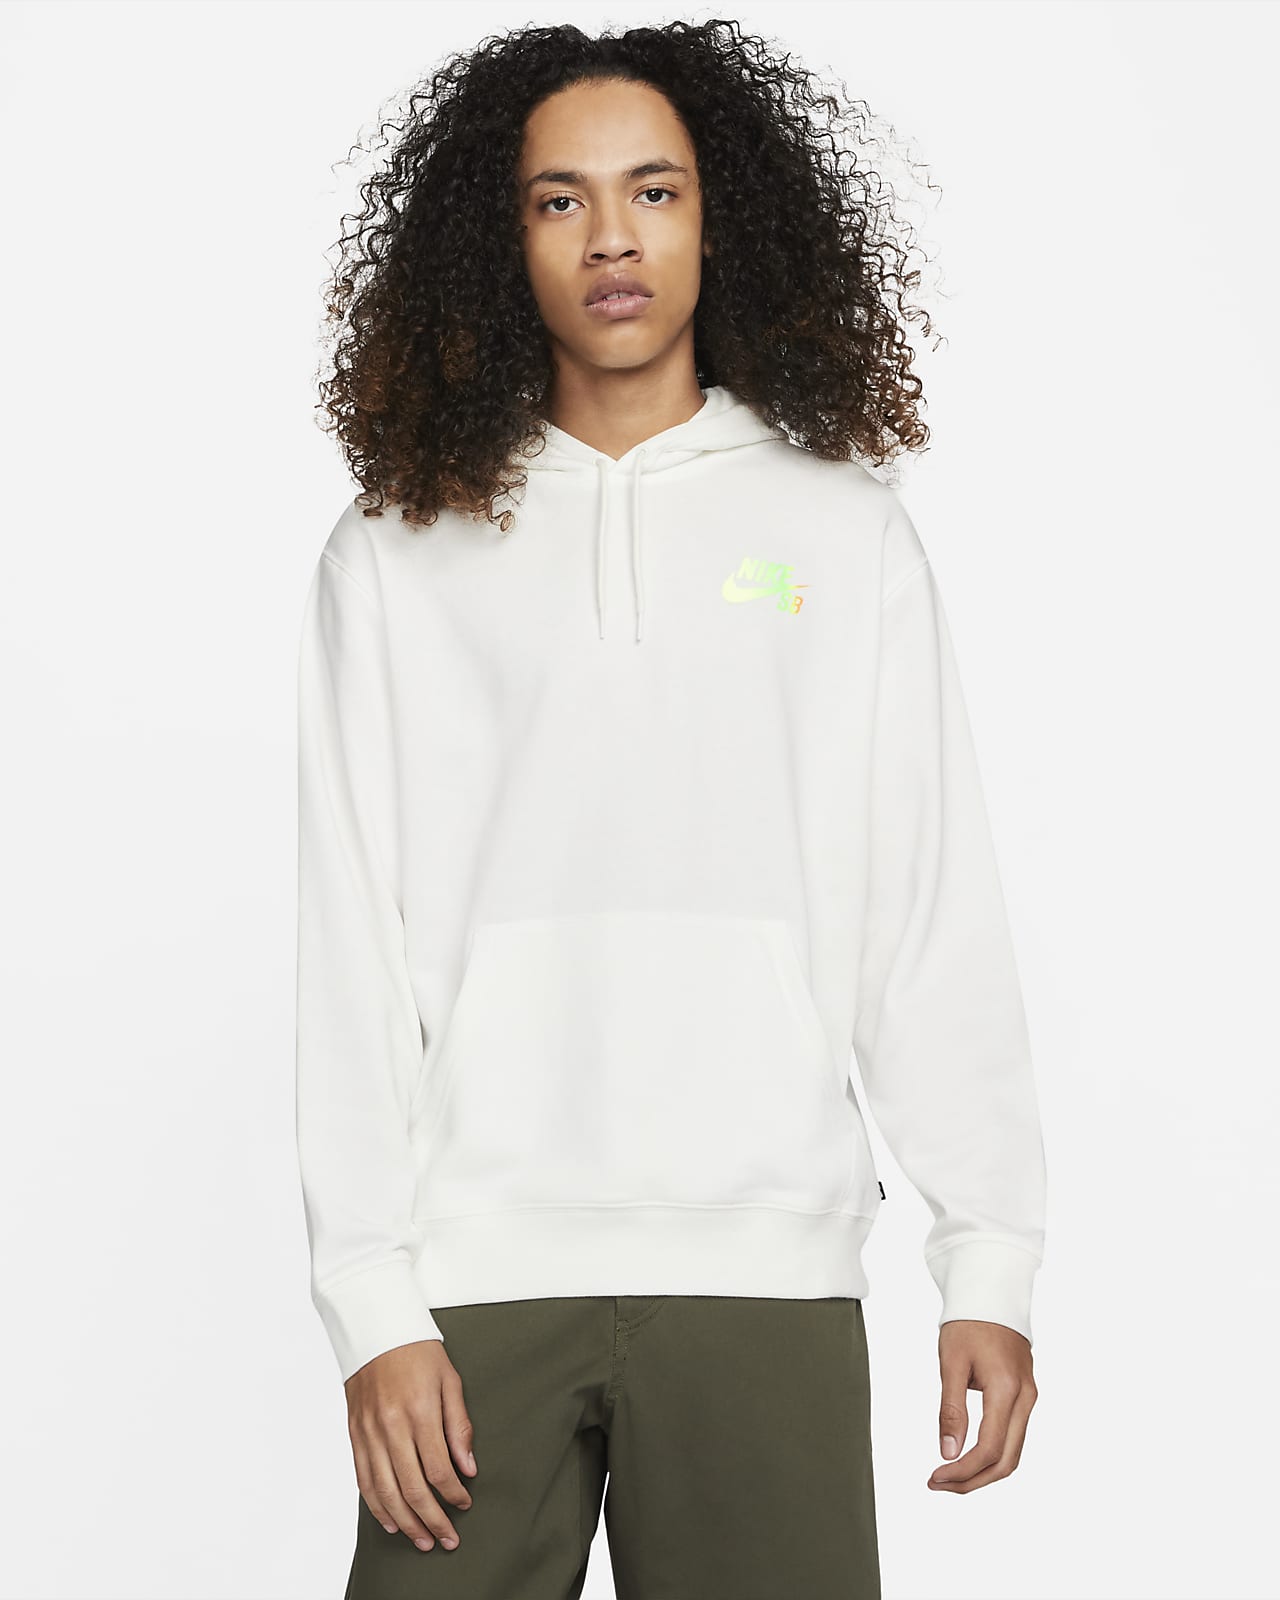 Μπλούζα με κουκούλα και σχέδια για skateboarding Nike SB